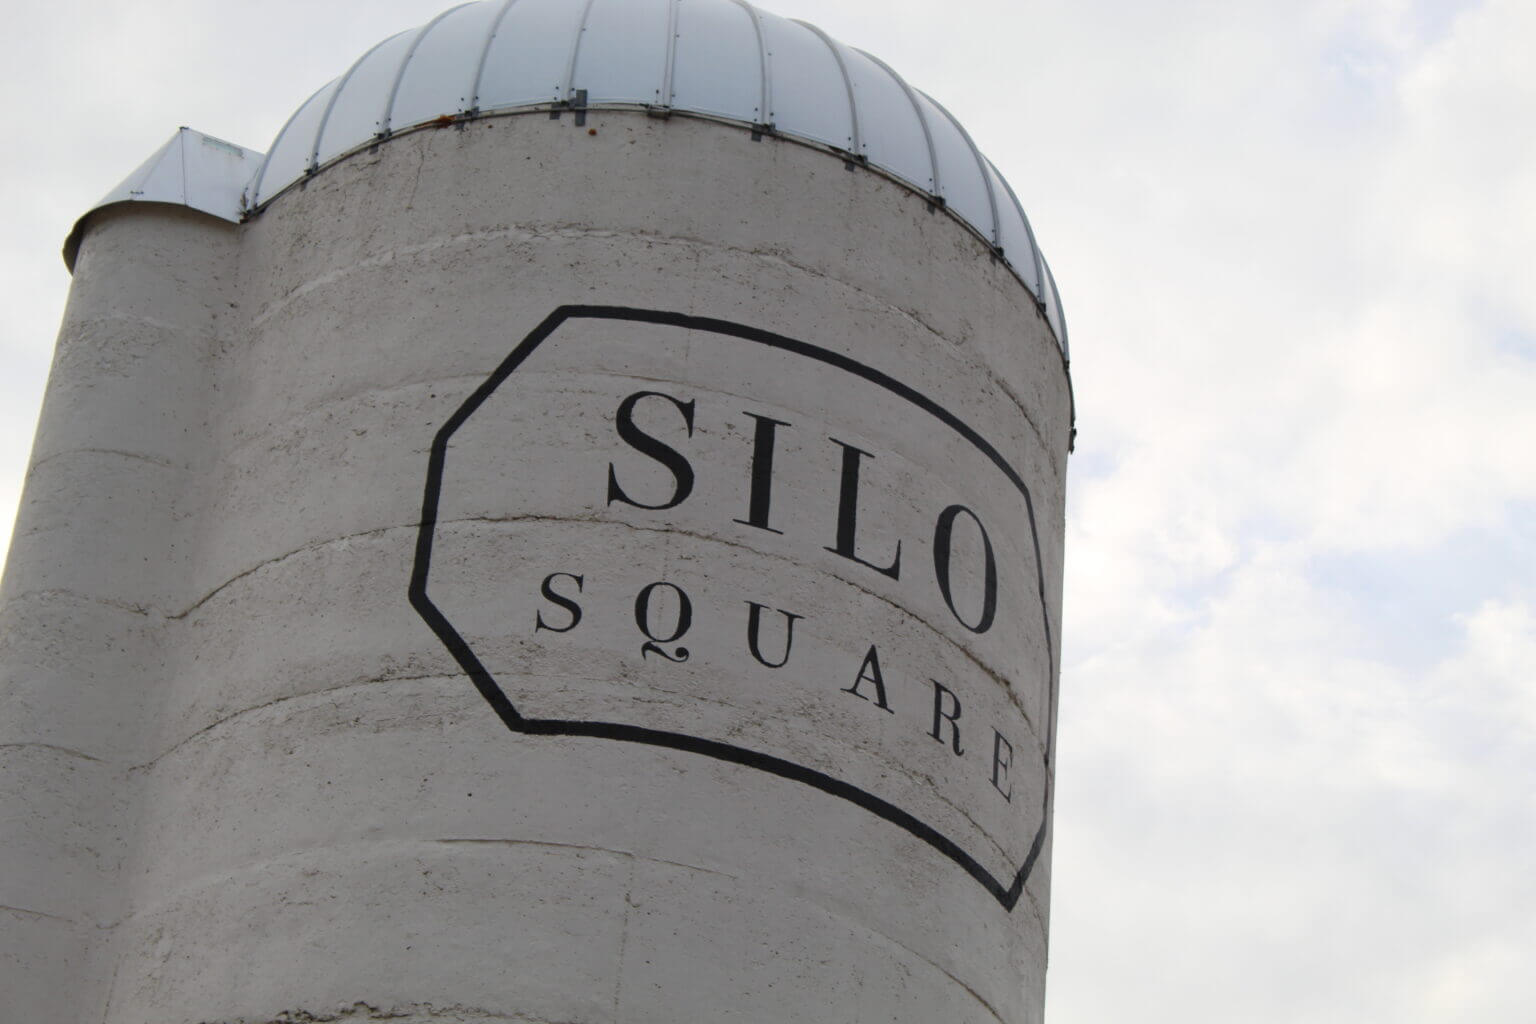 silo square